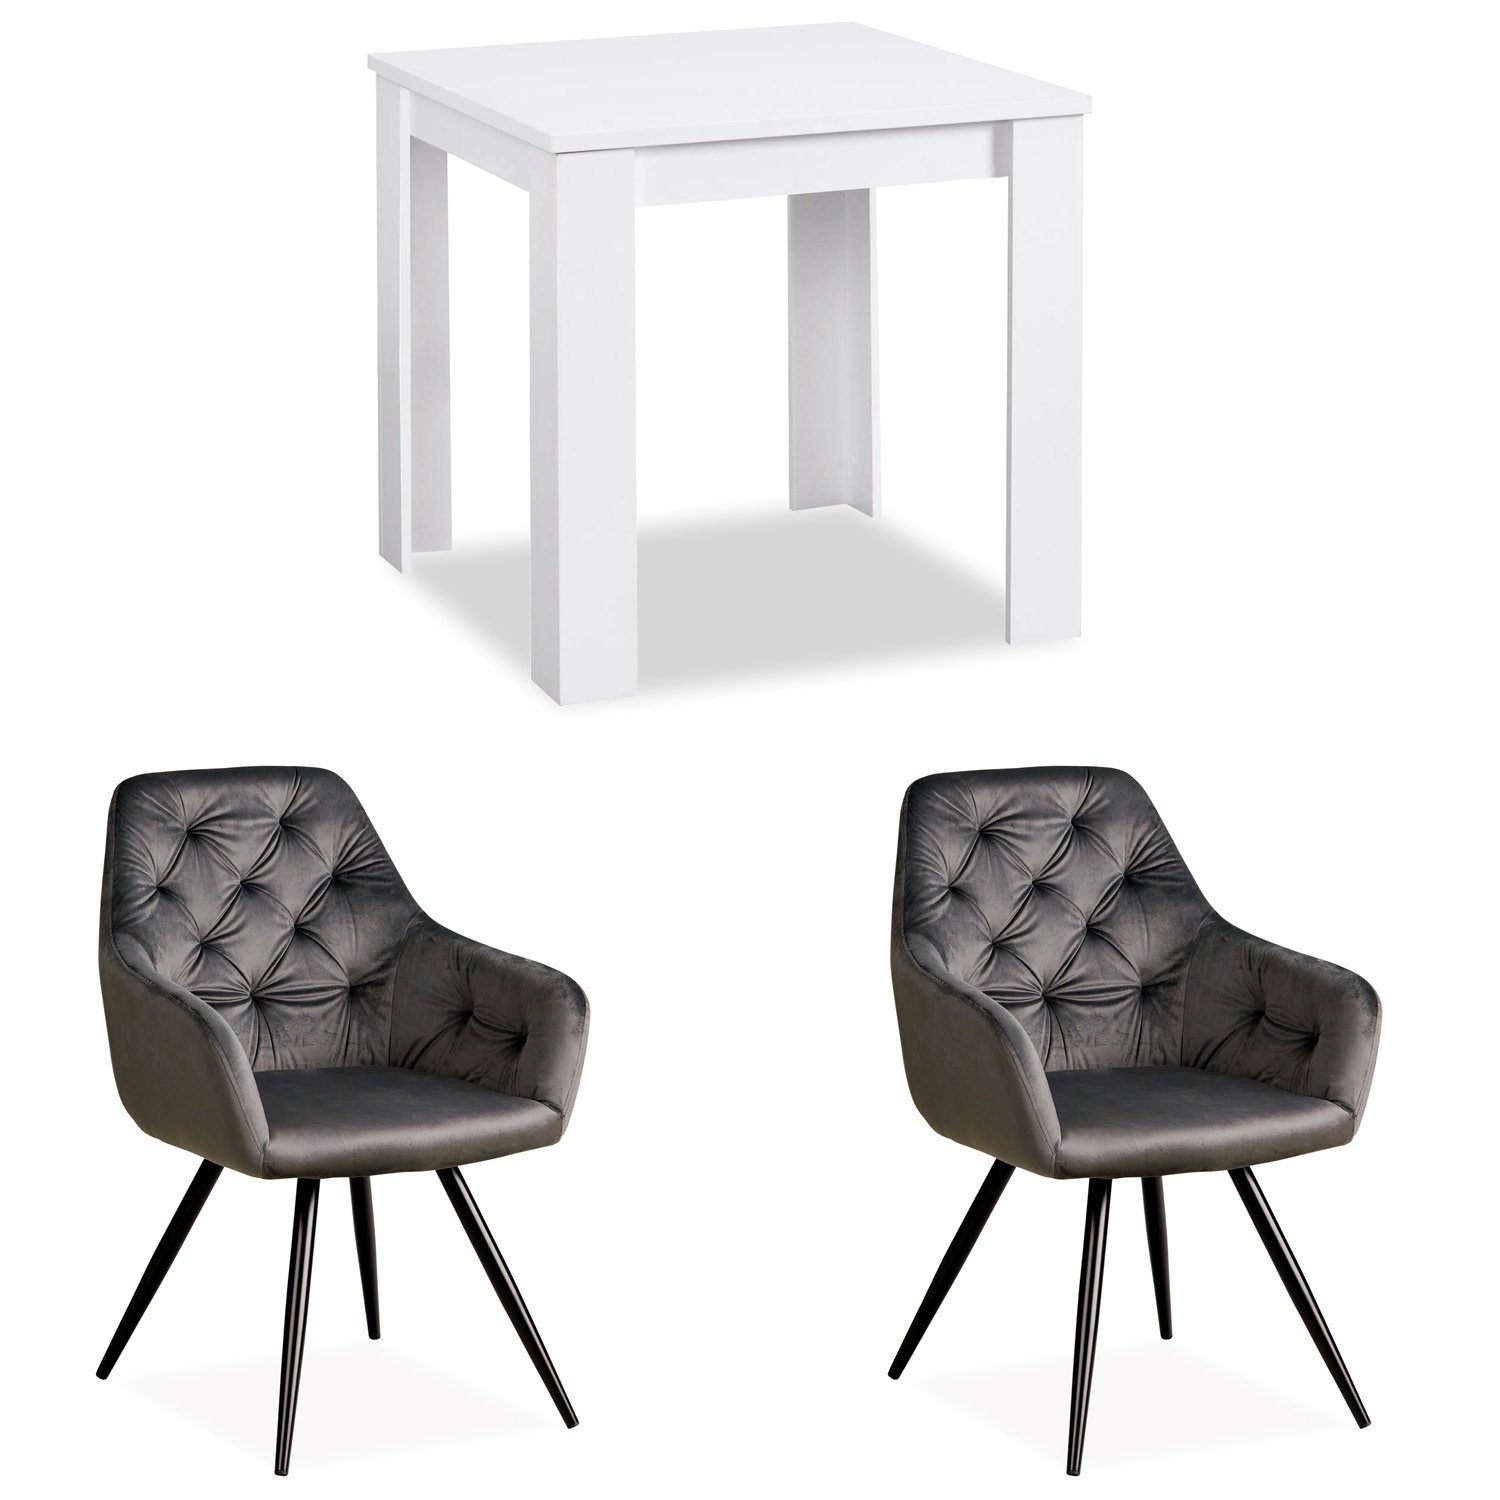 Samt Weiß Sesseln (Komplett-Set, Essgruppe Esstisch cm 80x80 mit 2 3-tlg) Grau, Homestyle4u